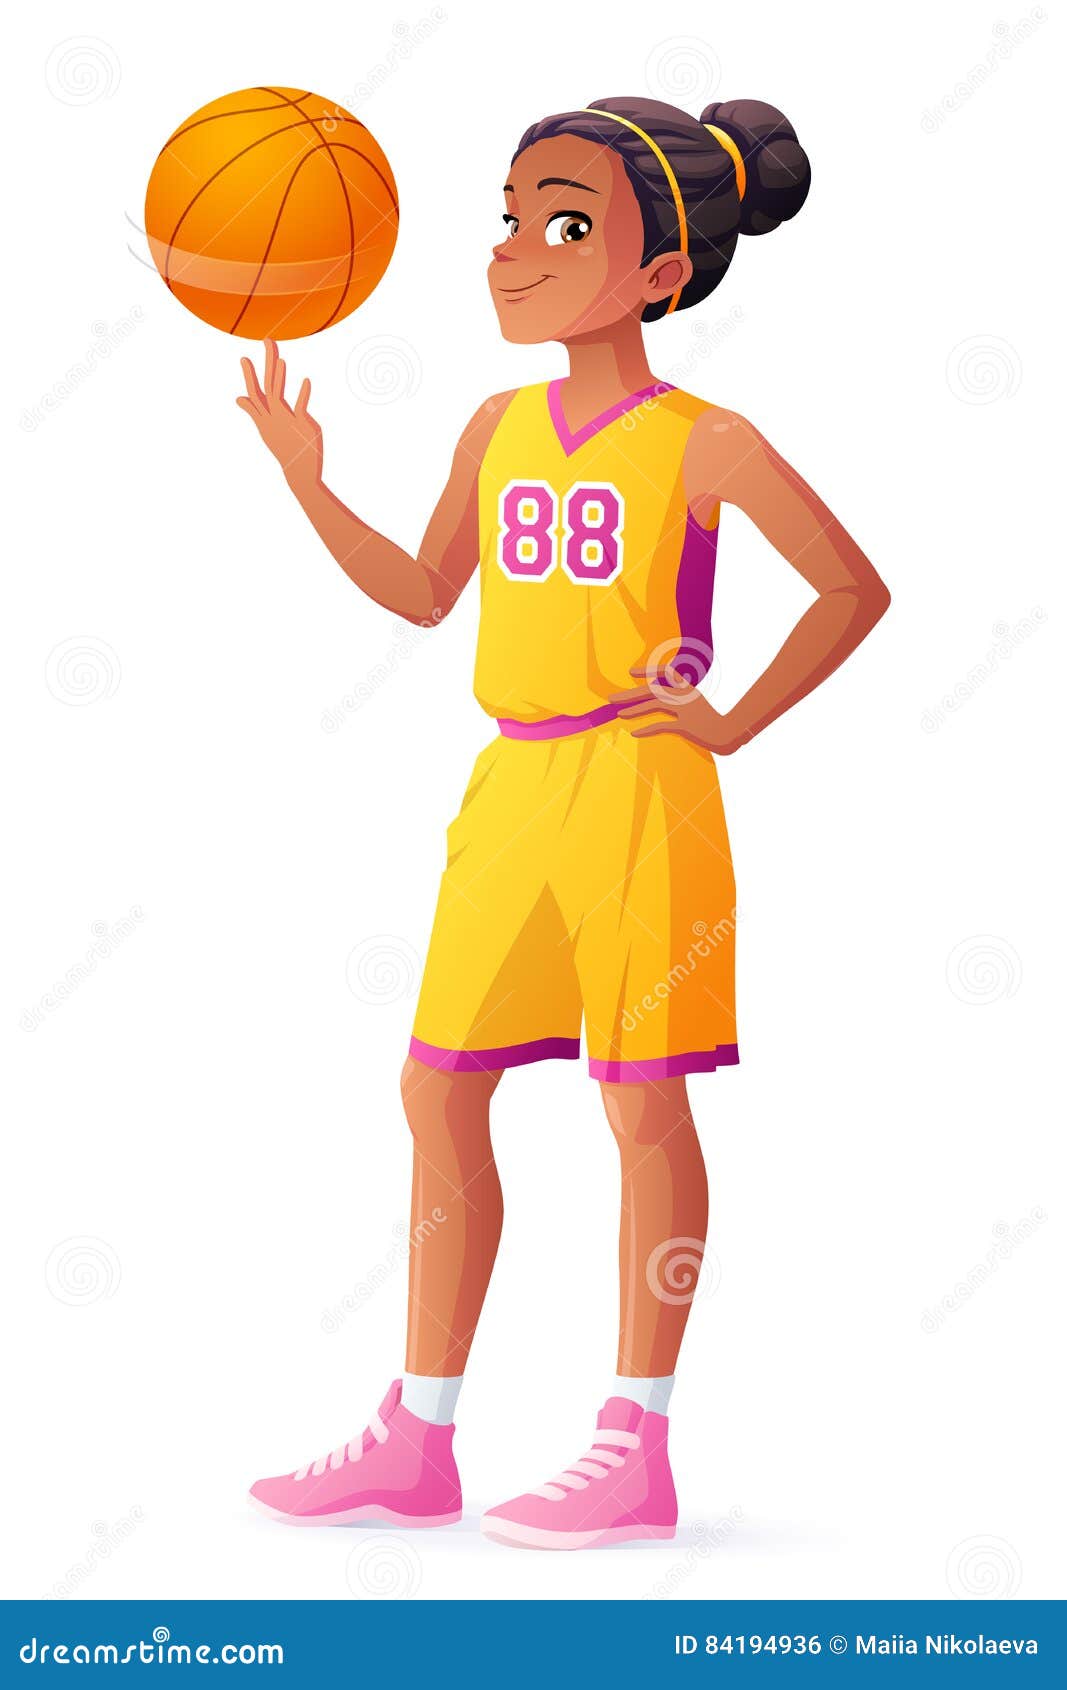 Girl Basketball Player Vector Stock Illustrations – 1,824 Girl